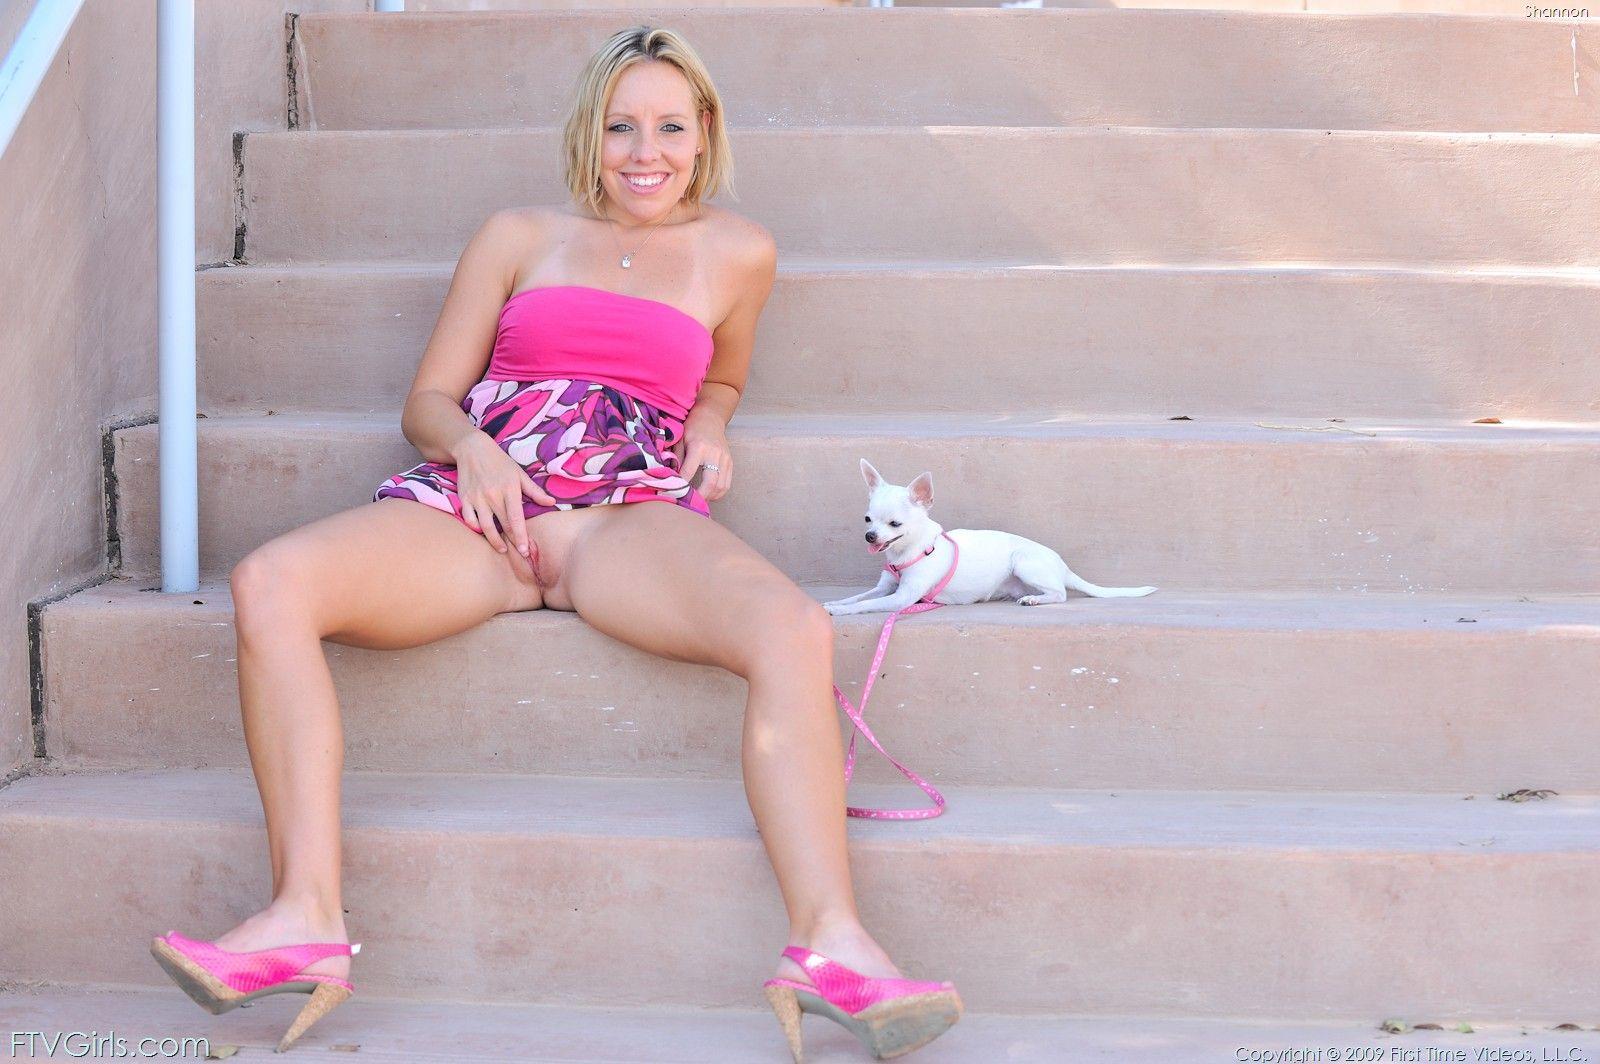 Bilder von Teenie-Schlampe Shannon, die ihre Beine spreizt
 #59959722